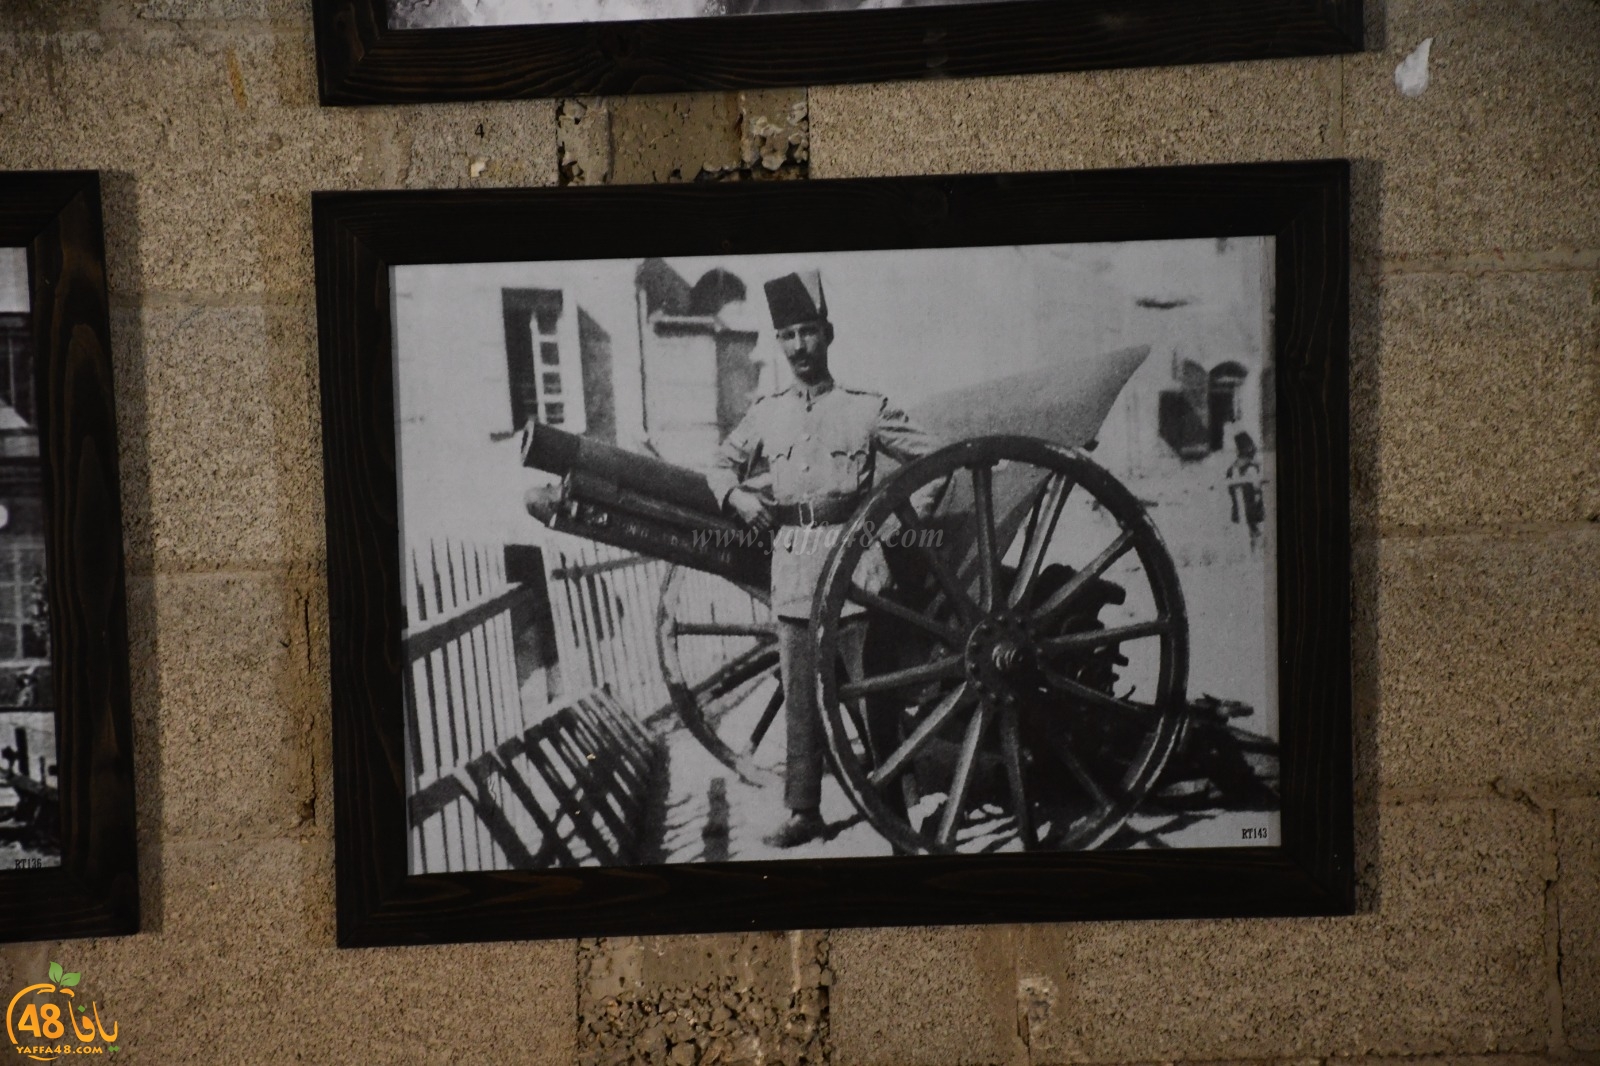  فيديو: جولة في معرض الصور التاريخية في ميناء يافا ... لا تفوتوا الفرصة